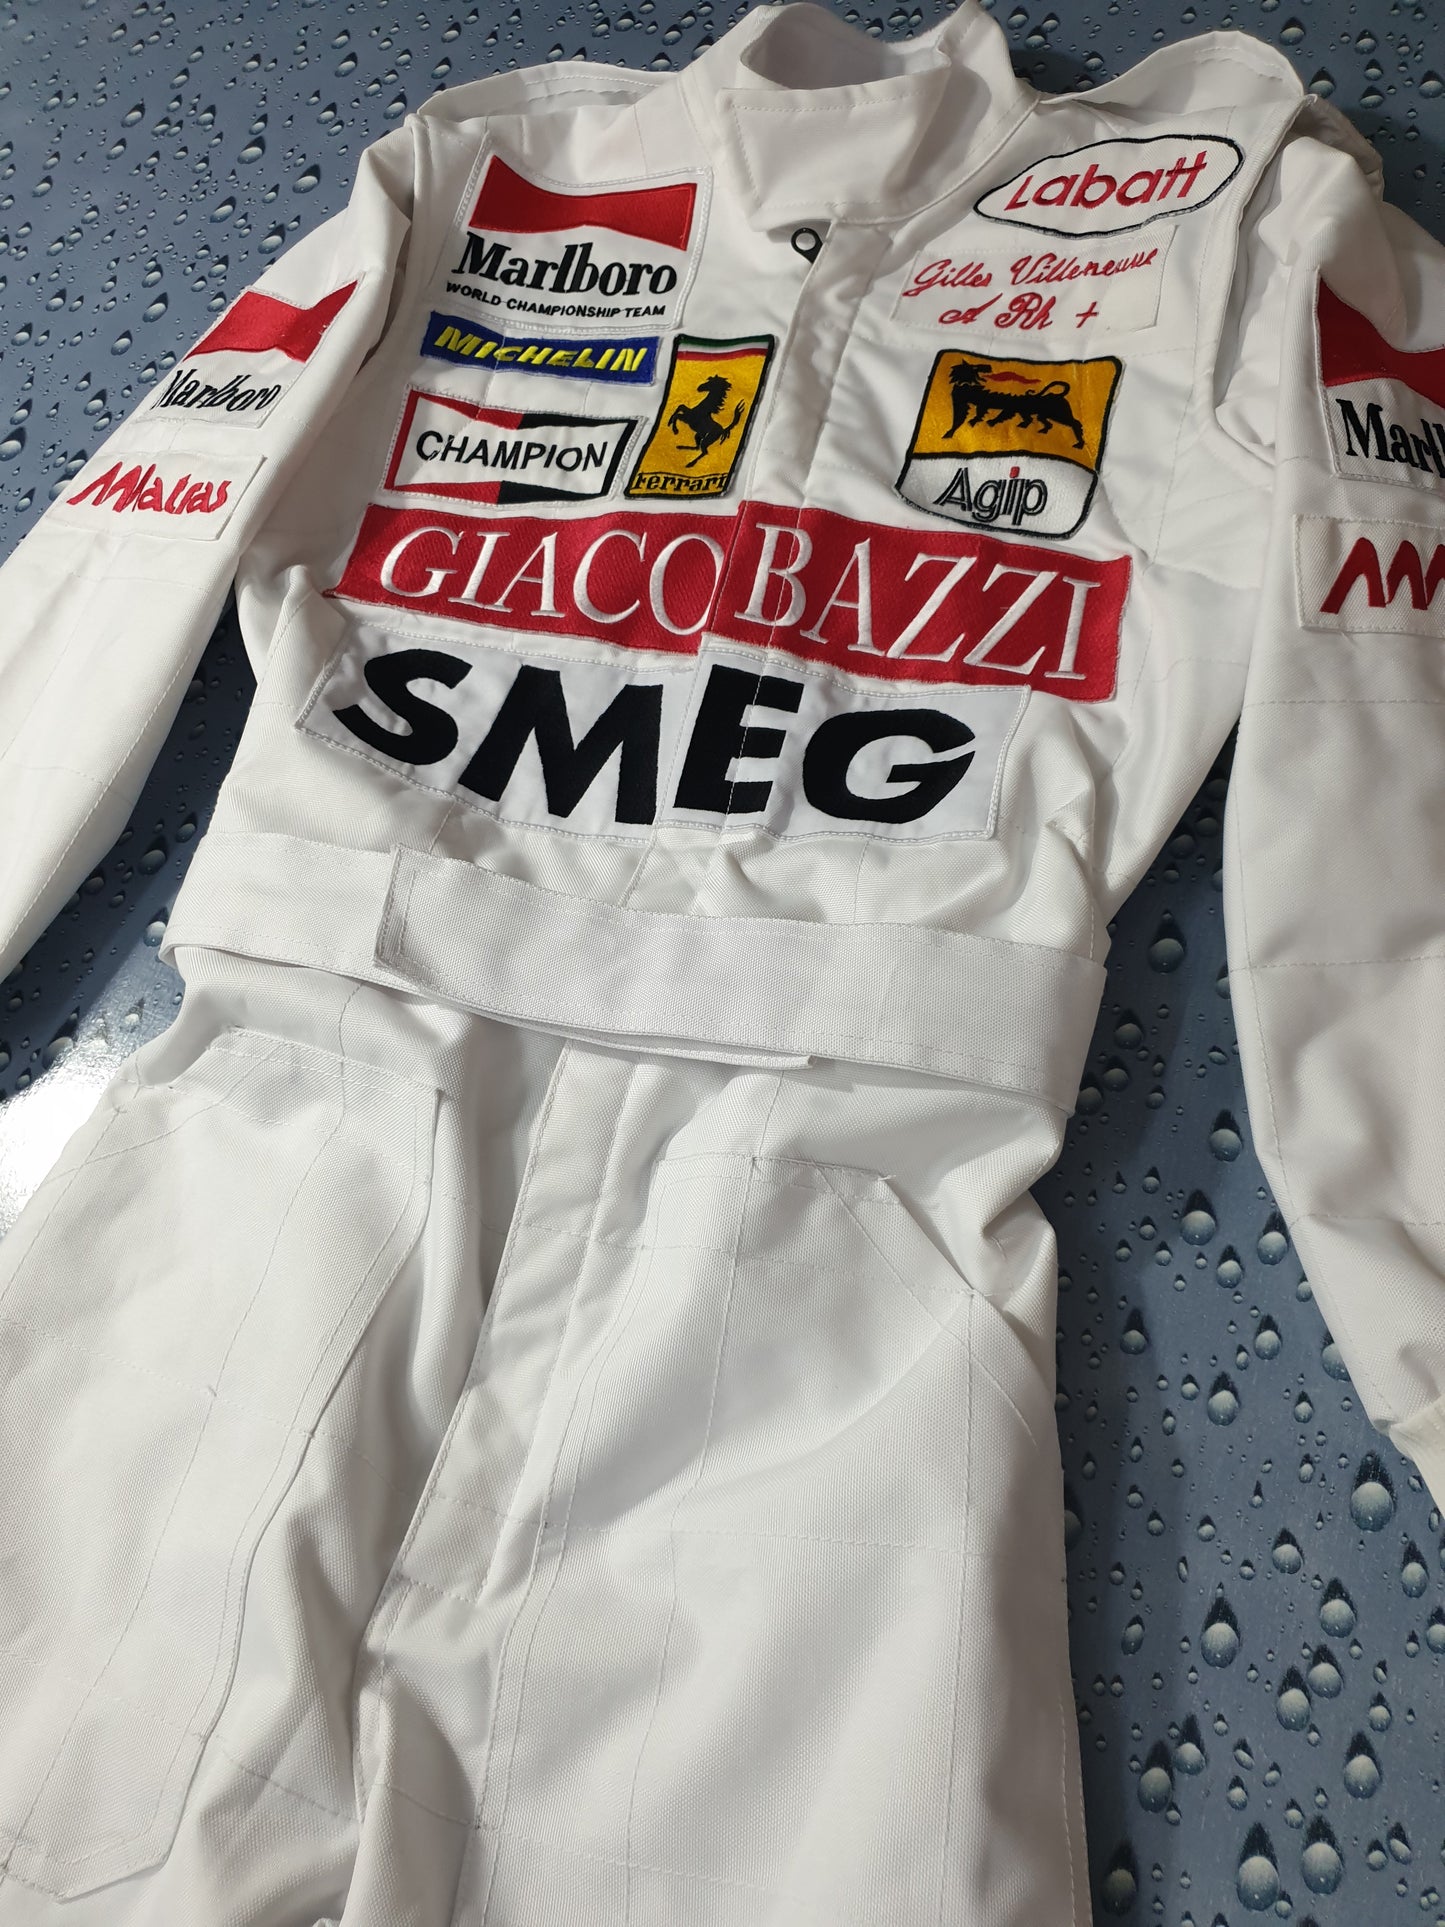 Gilles Villeneuve 1970 Smeg Embroidered Replica Race Suit